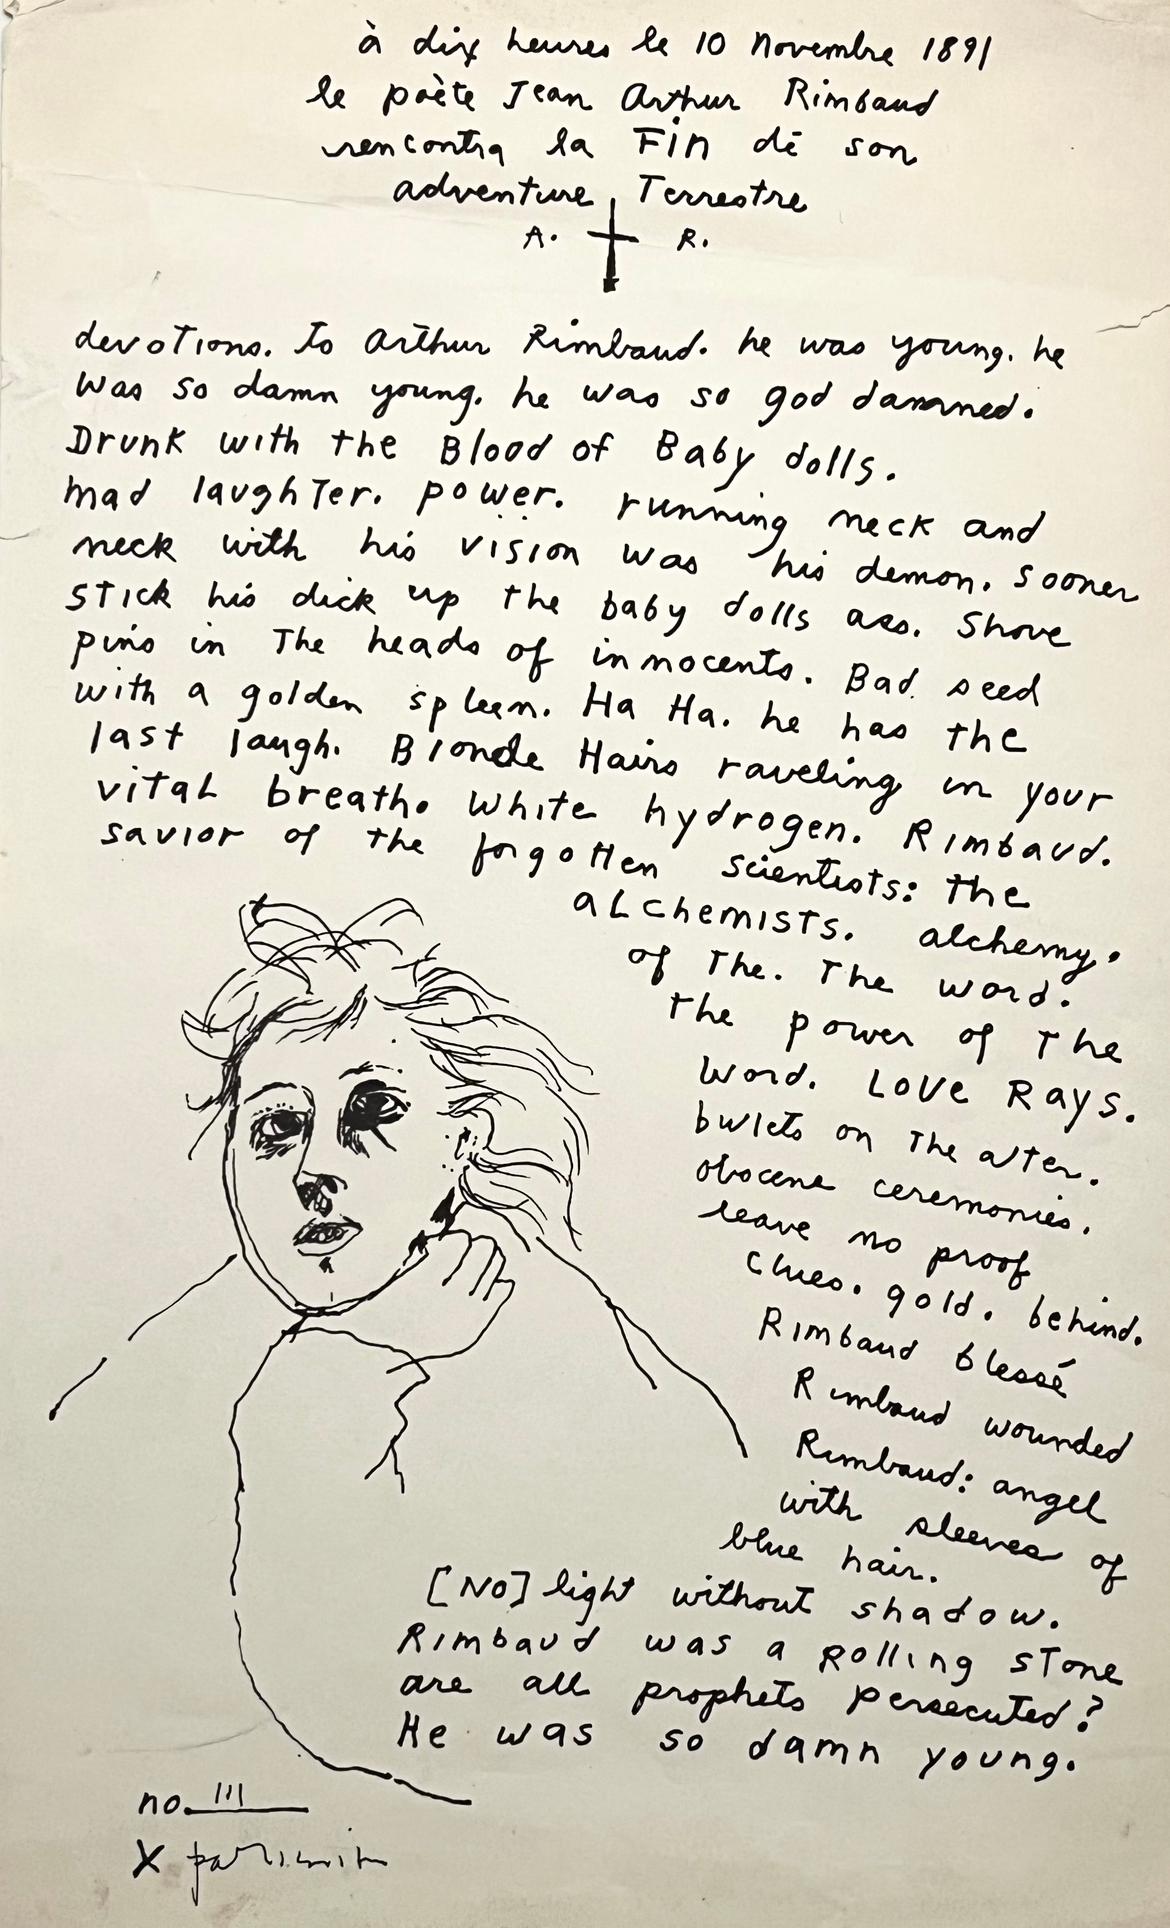 Patti Smith Dévotions à Arthur Rimbaud 1973 :
Une rare estampe de Patti Smith représentant ses poèmes et ses œuvres d'art ; construite par Smith comme une déclaration d'admiration et d'amour pour Arthur Rimbaud - le célèbre poète symboliste français